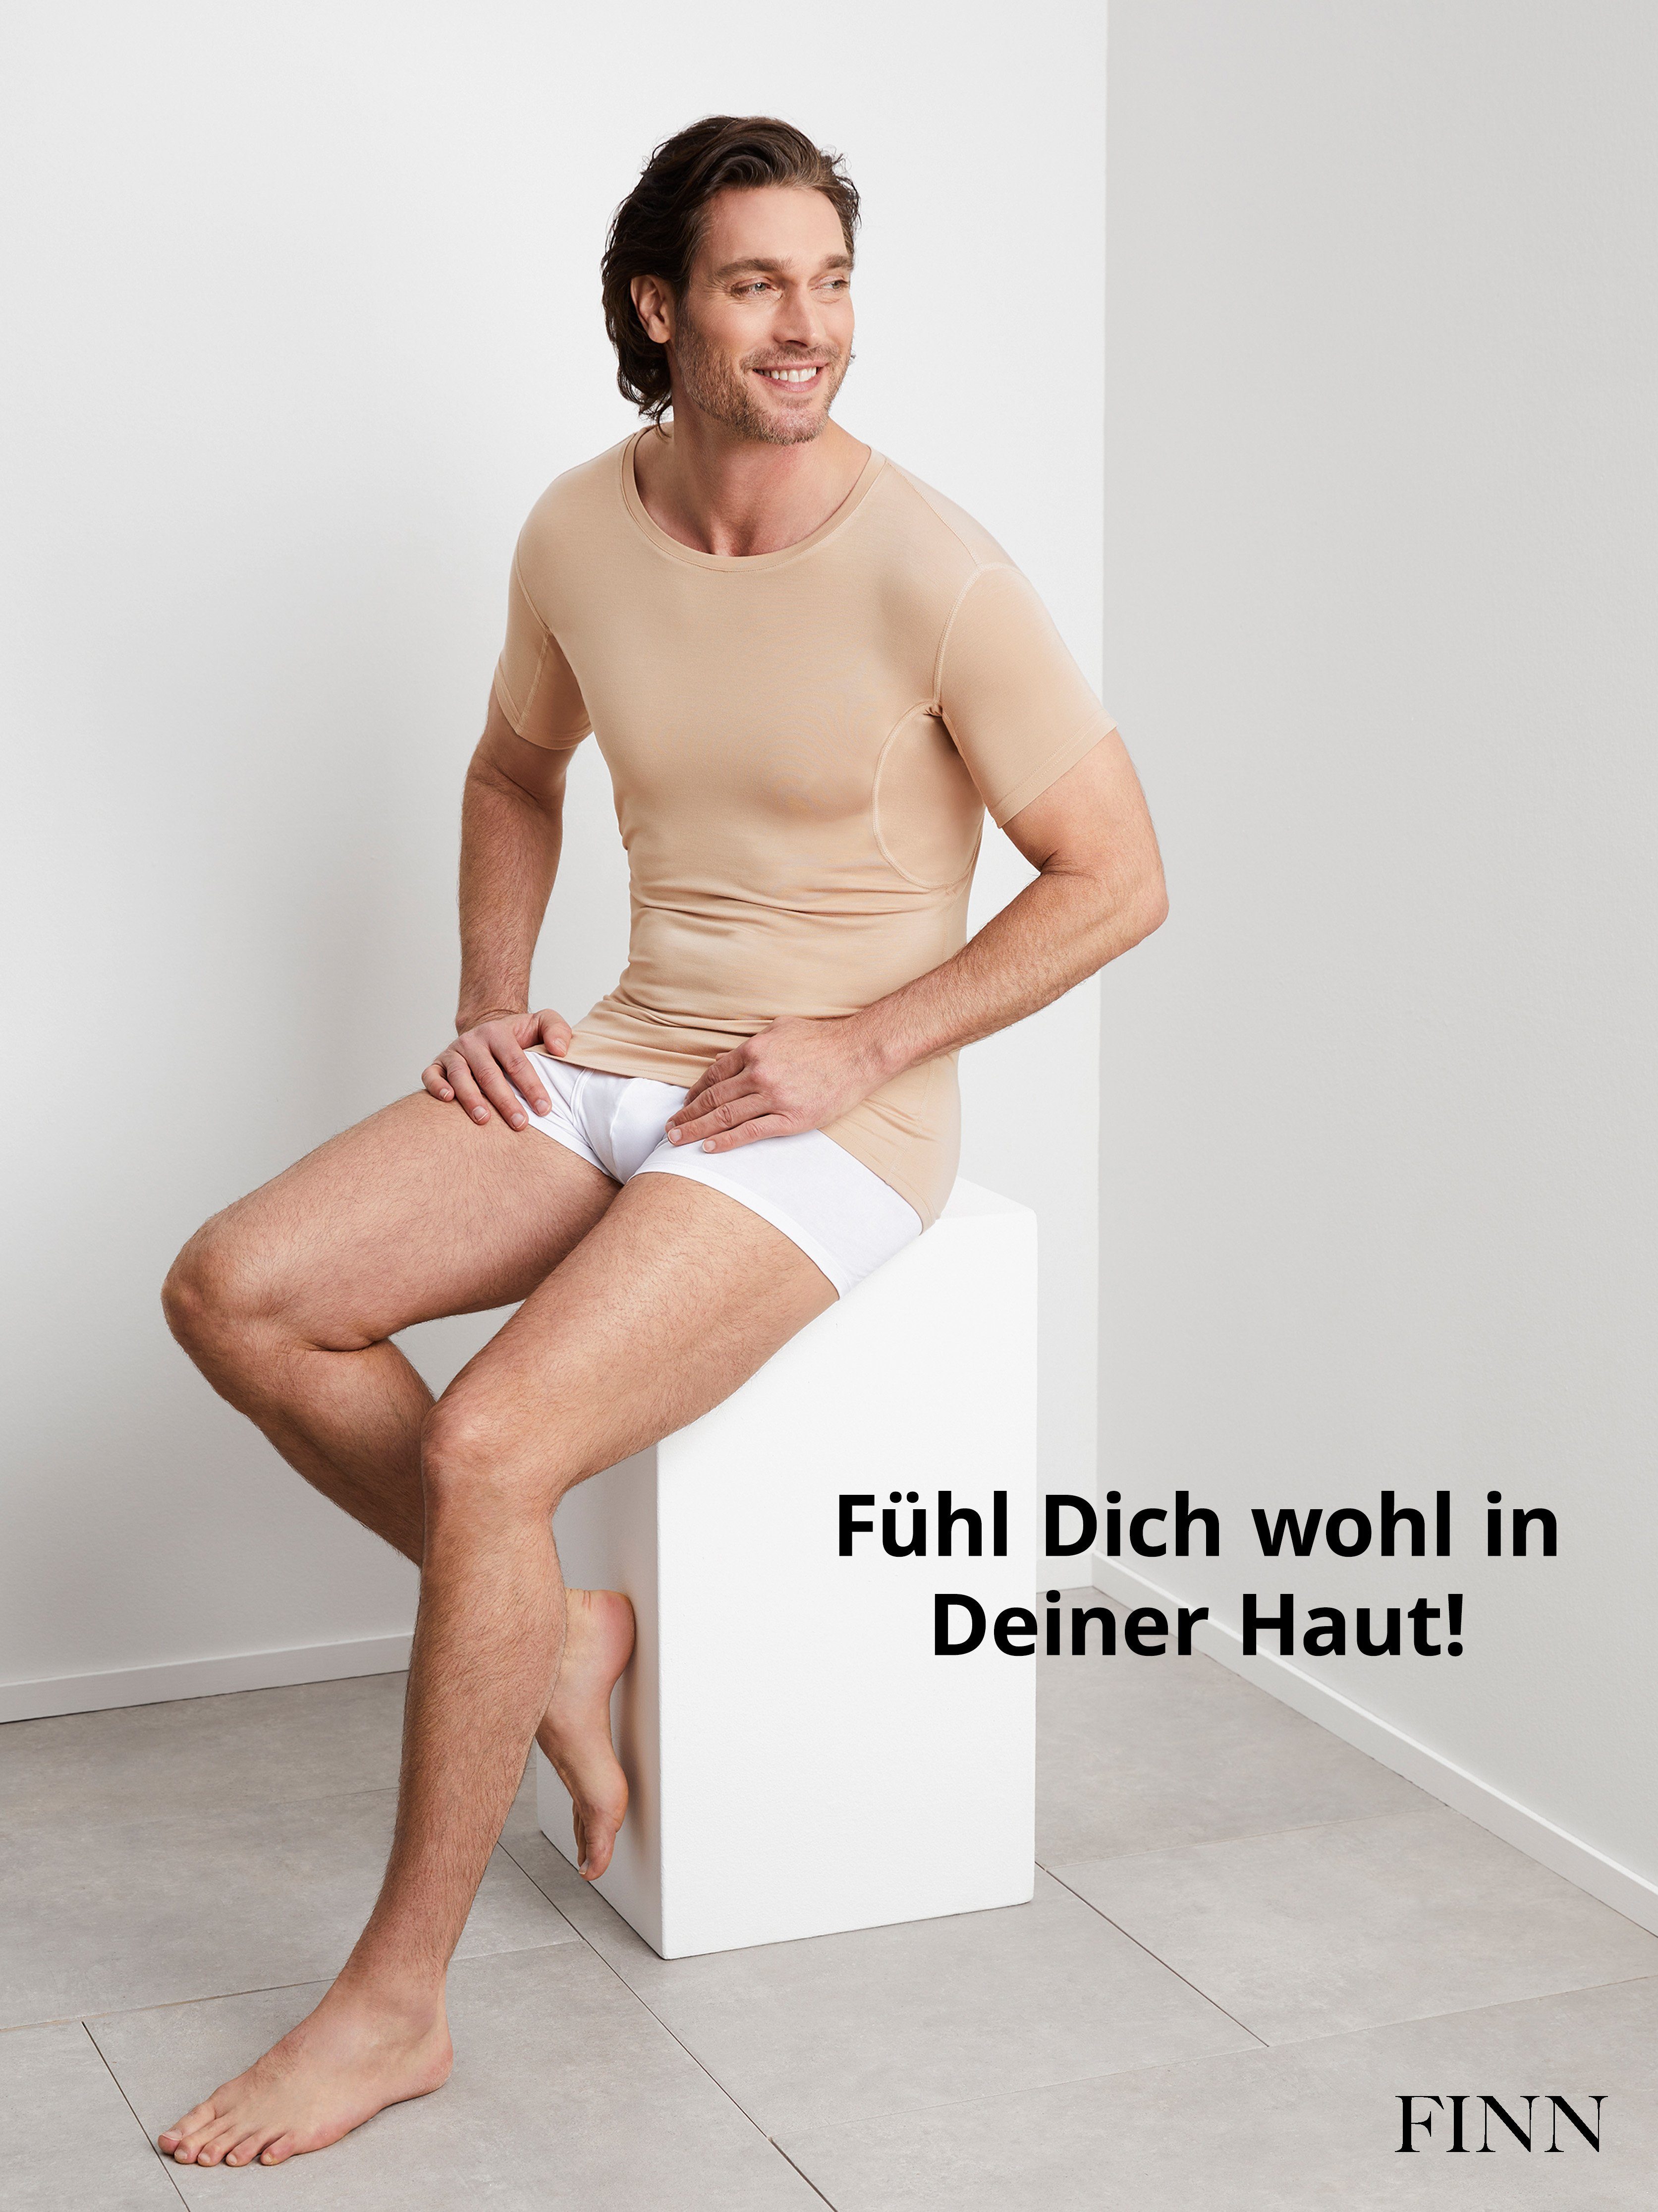 Wirkung vor Schutz Herren Light-Beige Unterhemd mit Unterhemd Anti-Schweiß Design Rundhals 100% garantierte Schweißflecken, FINN